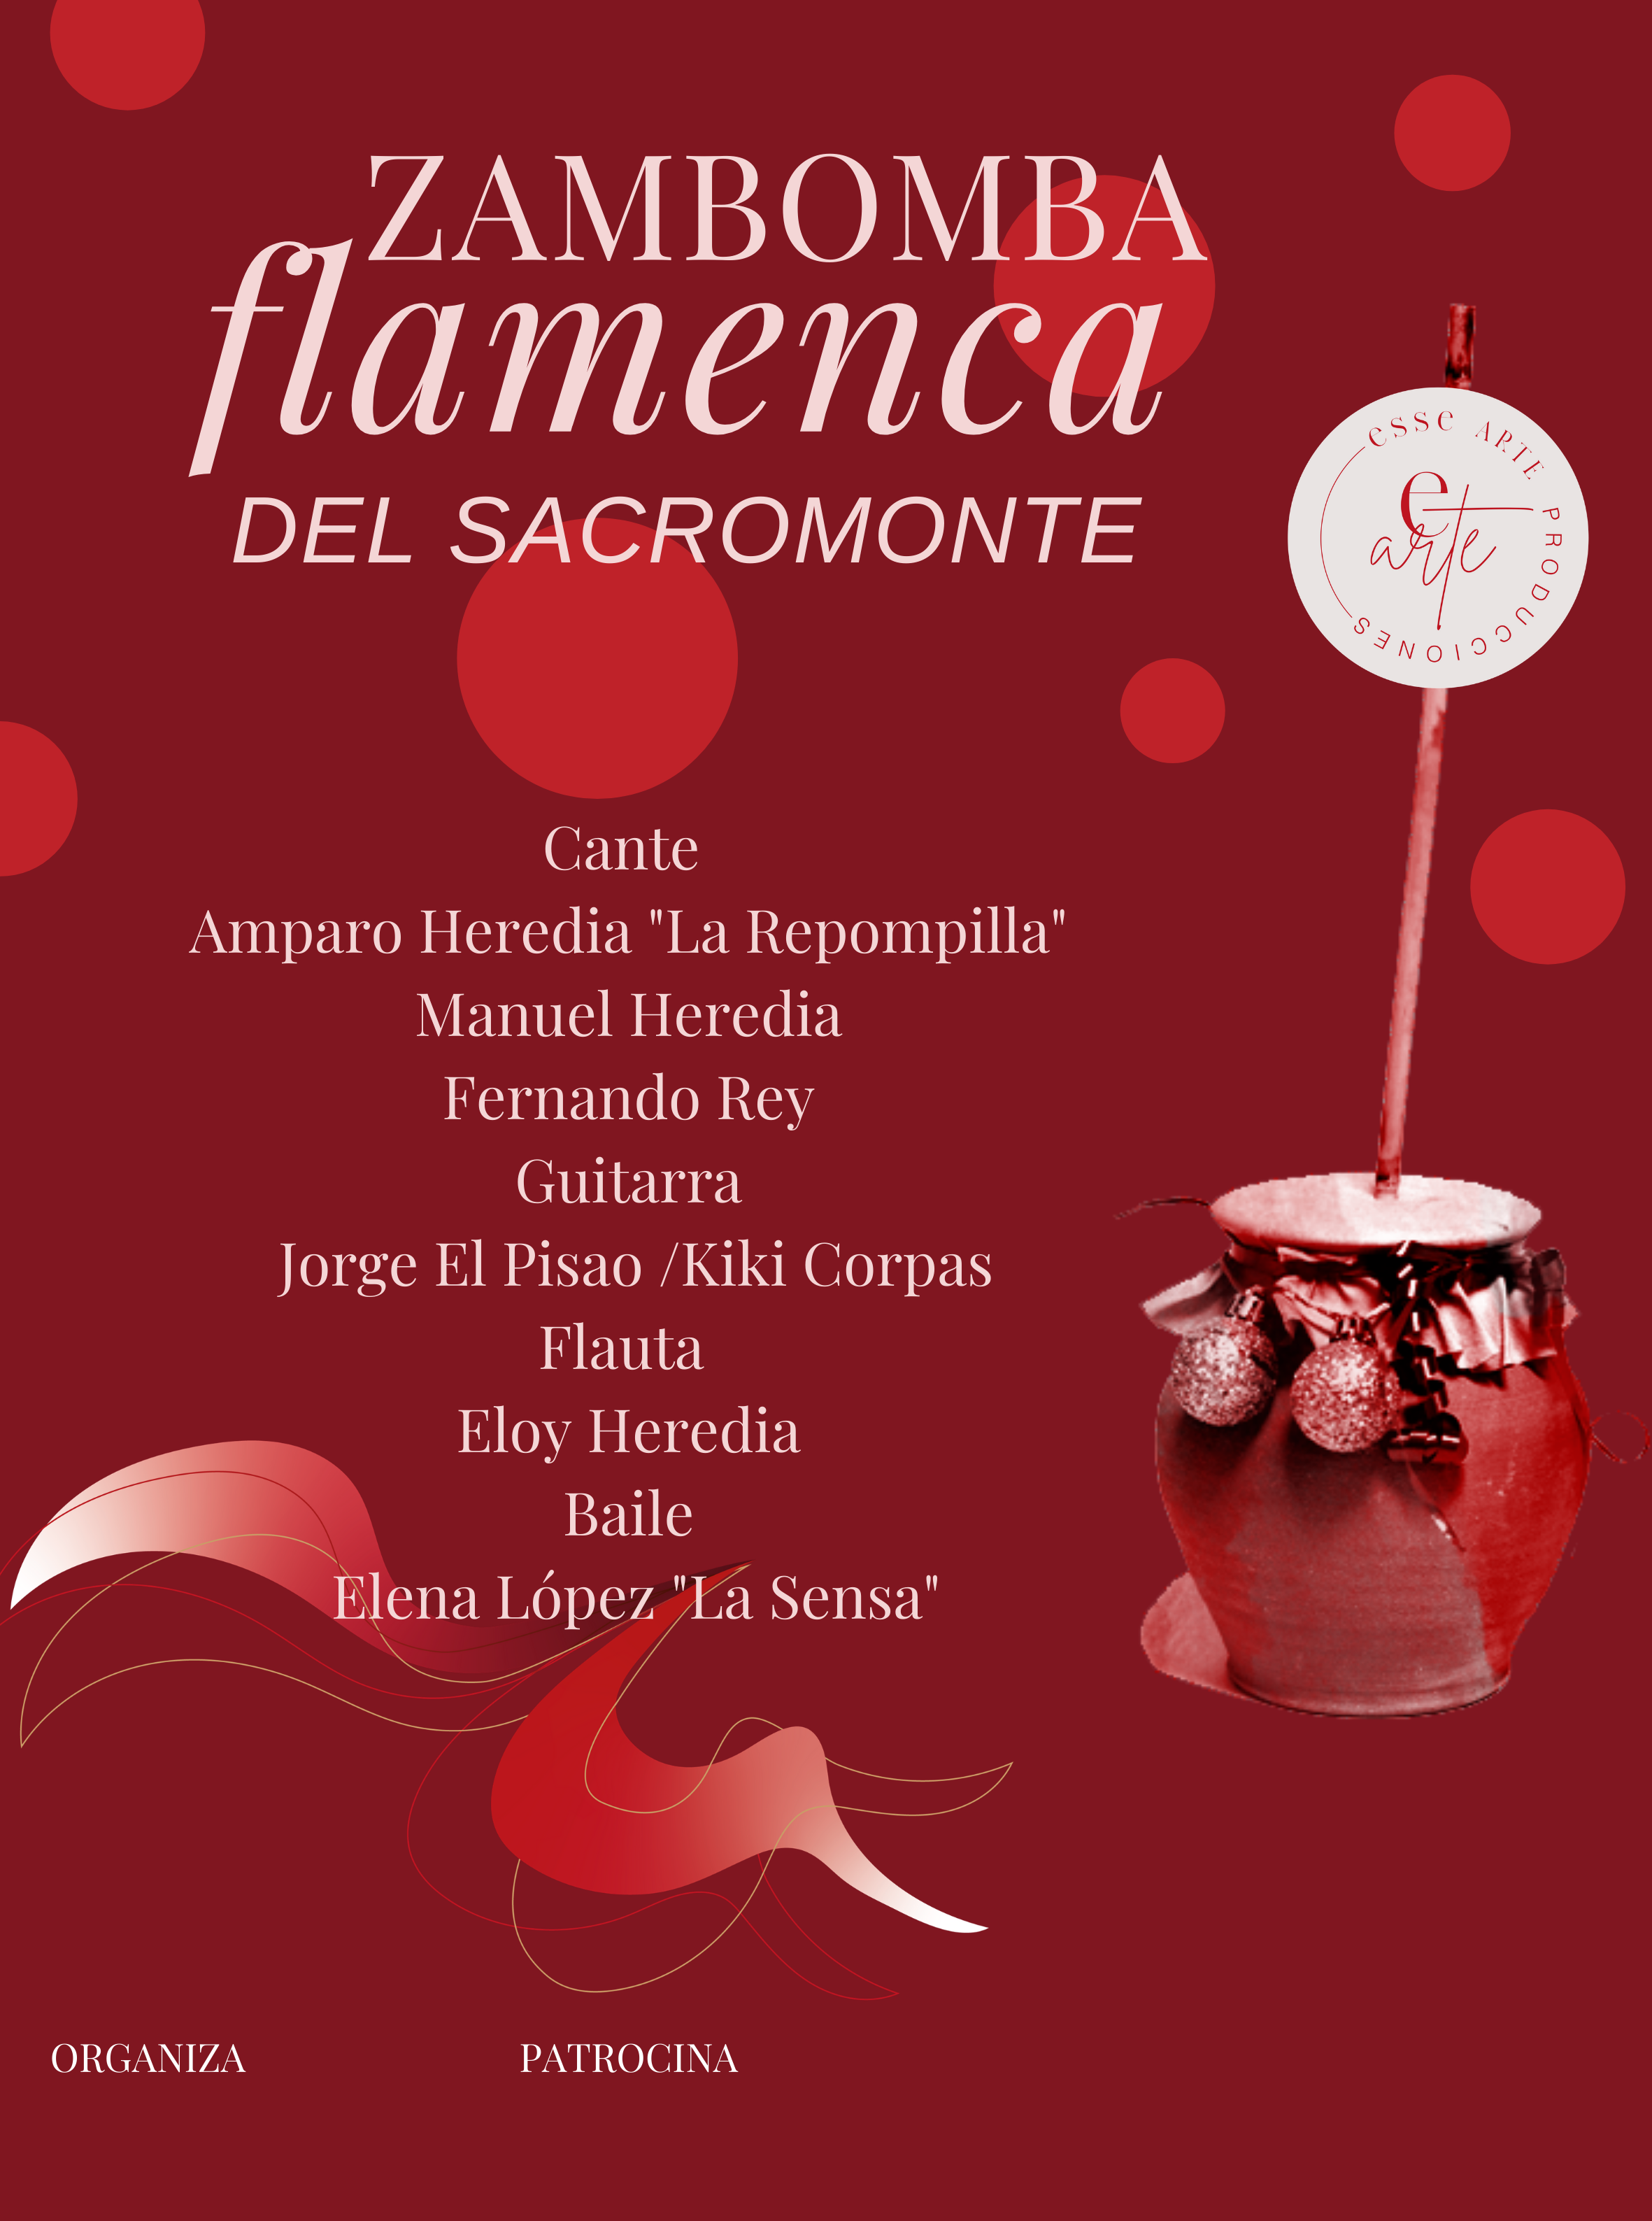 Zambomba flamenca del Sacromonte